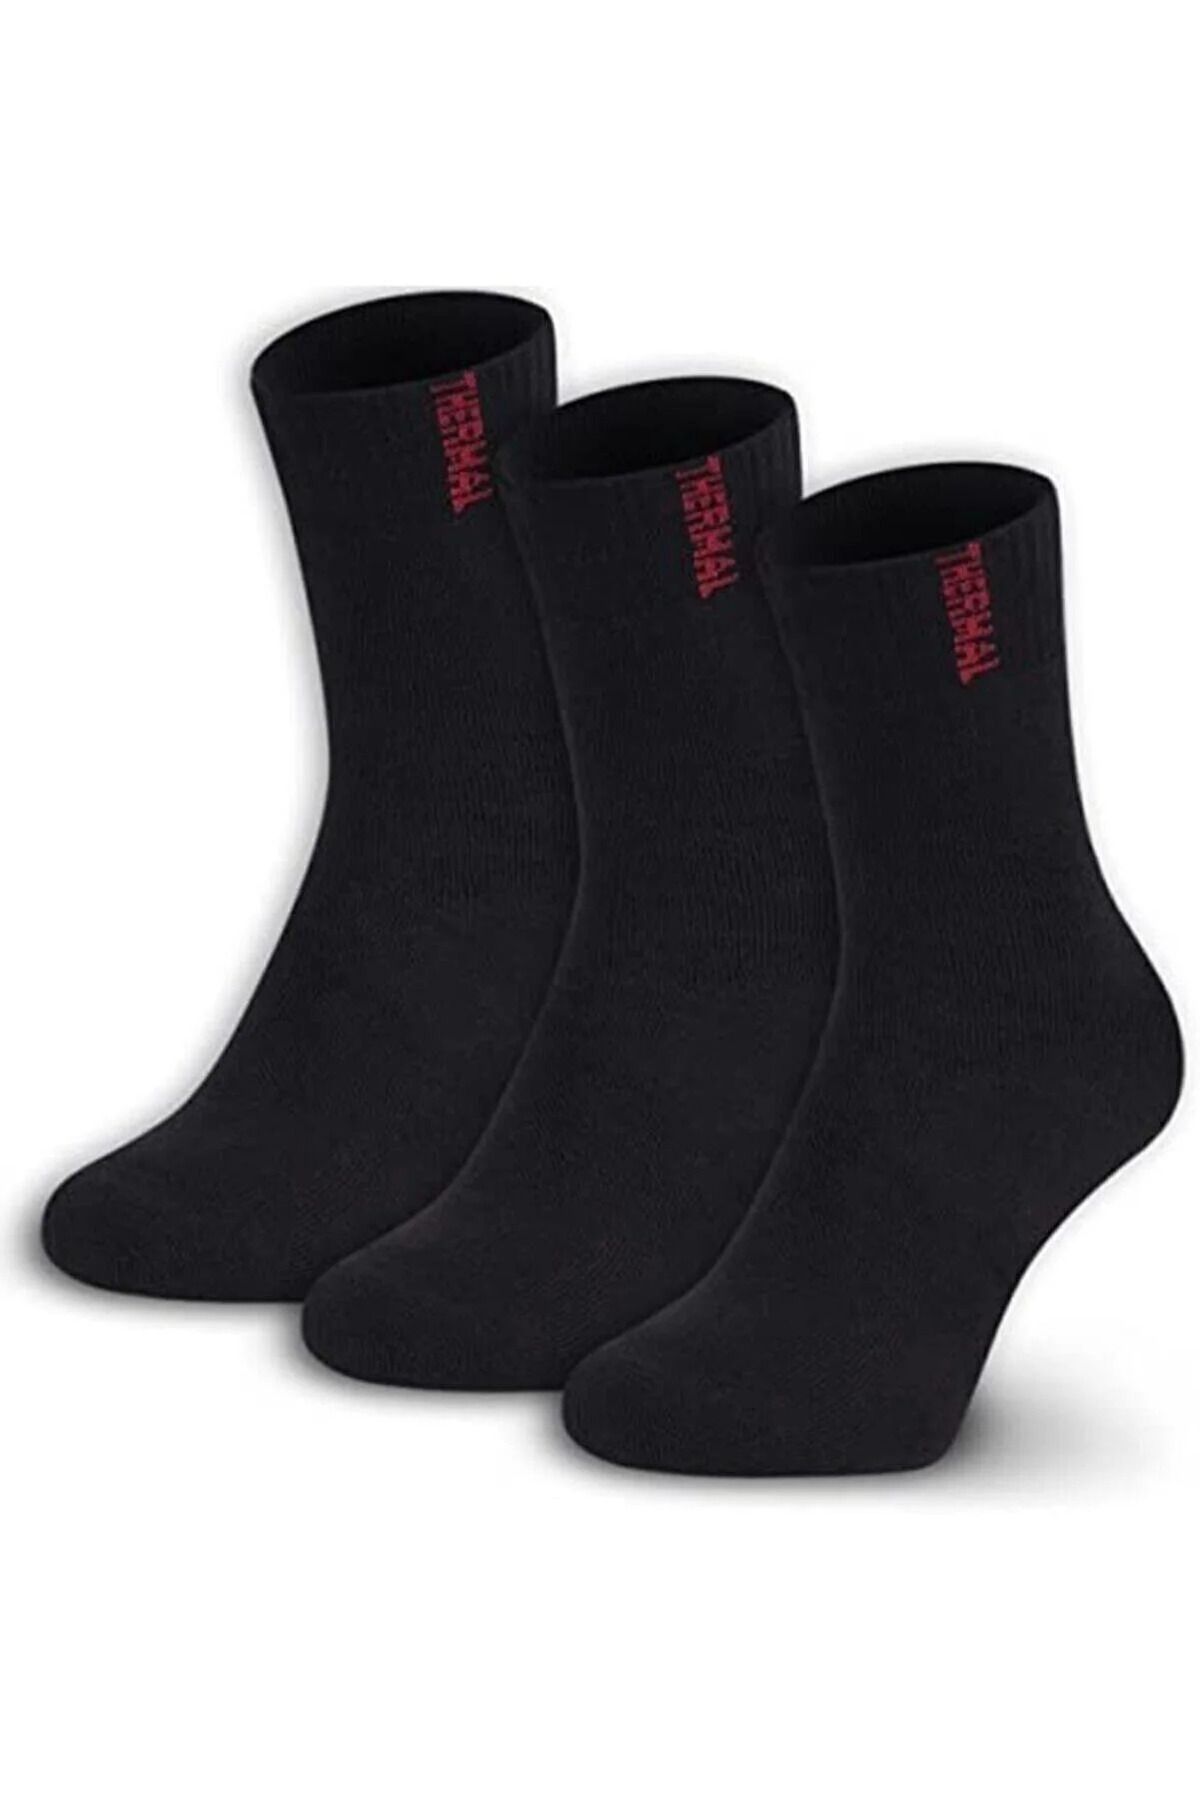 Lonca Tekstil 3'lü Kadın Thermal Havlu Çorap Siyah Renk